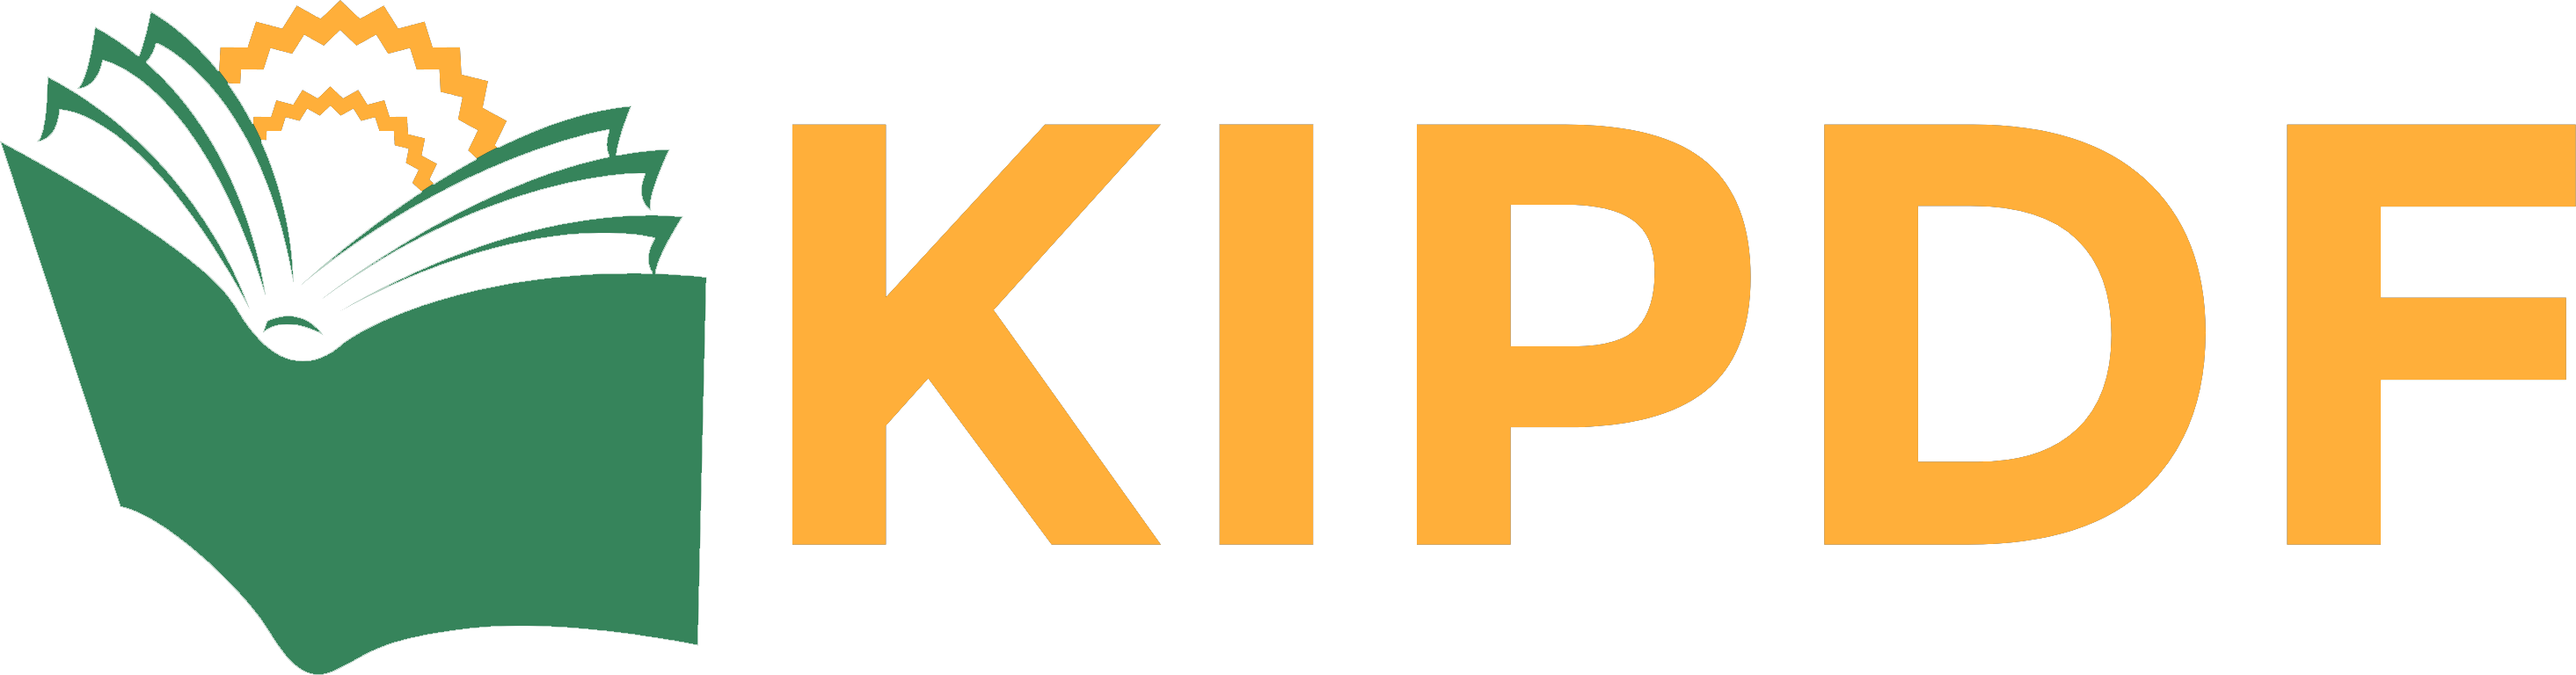 El Patrimonio Mundial Kipdf Com